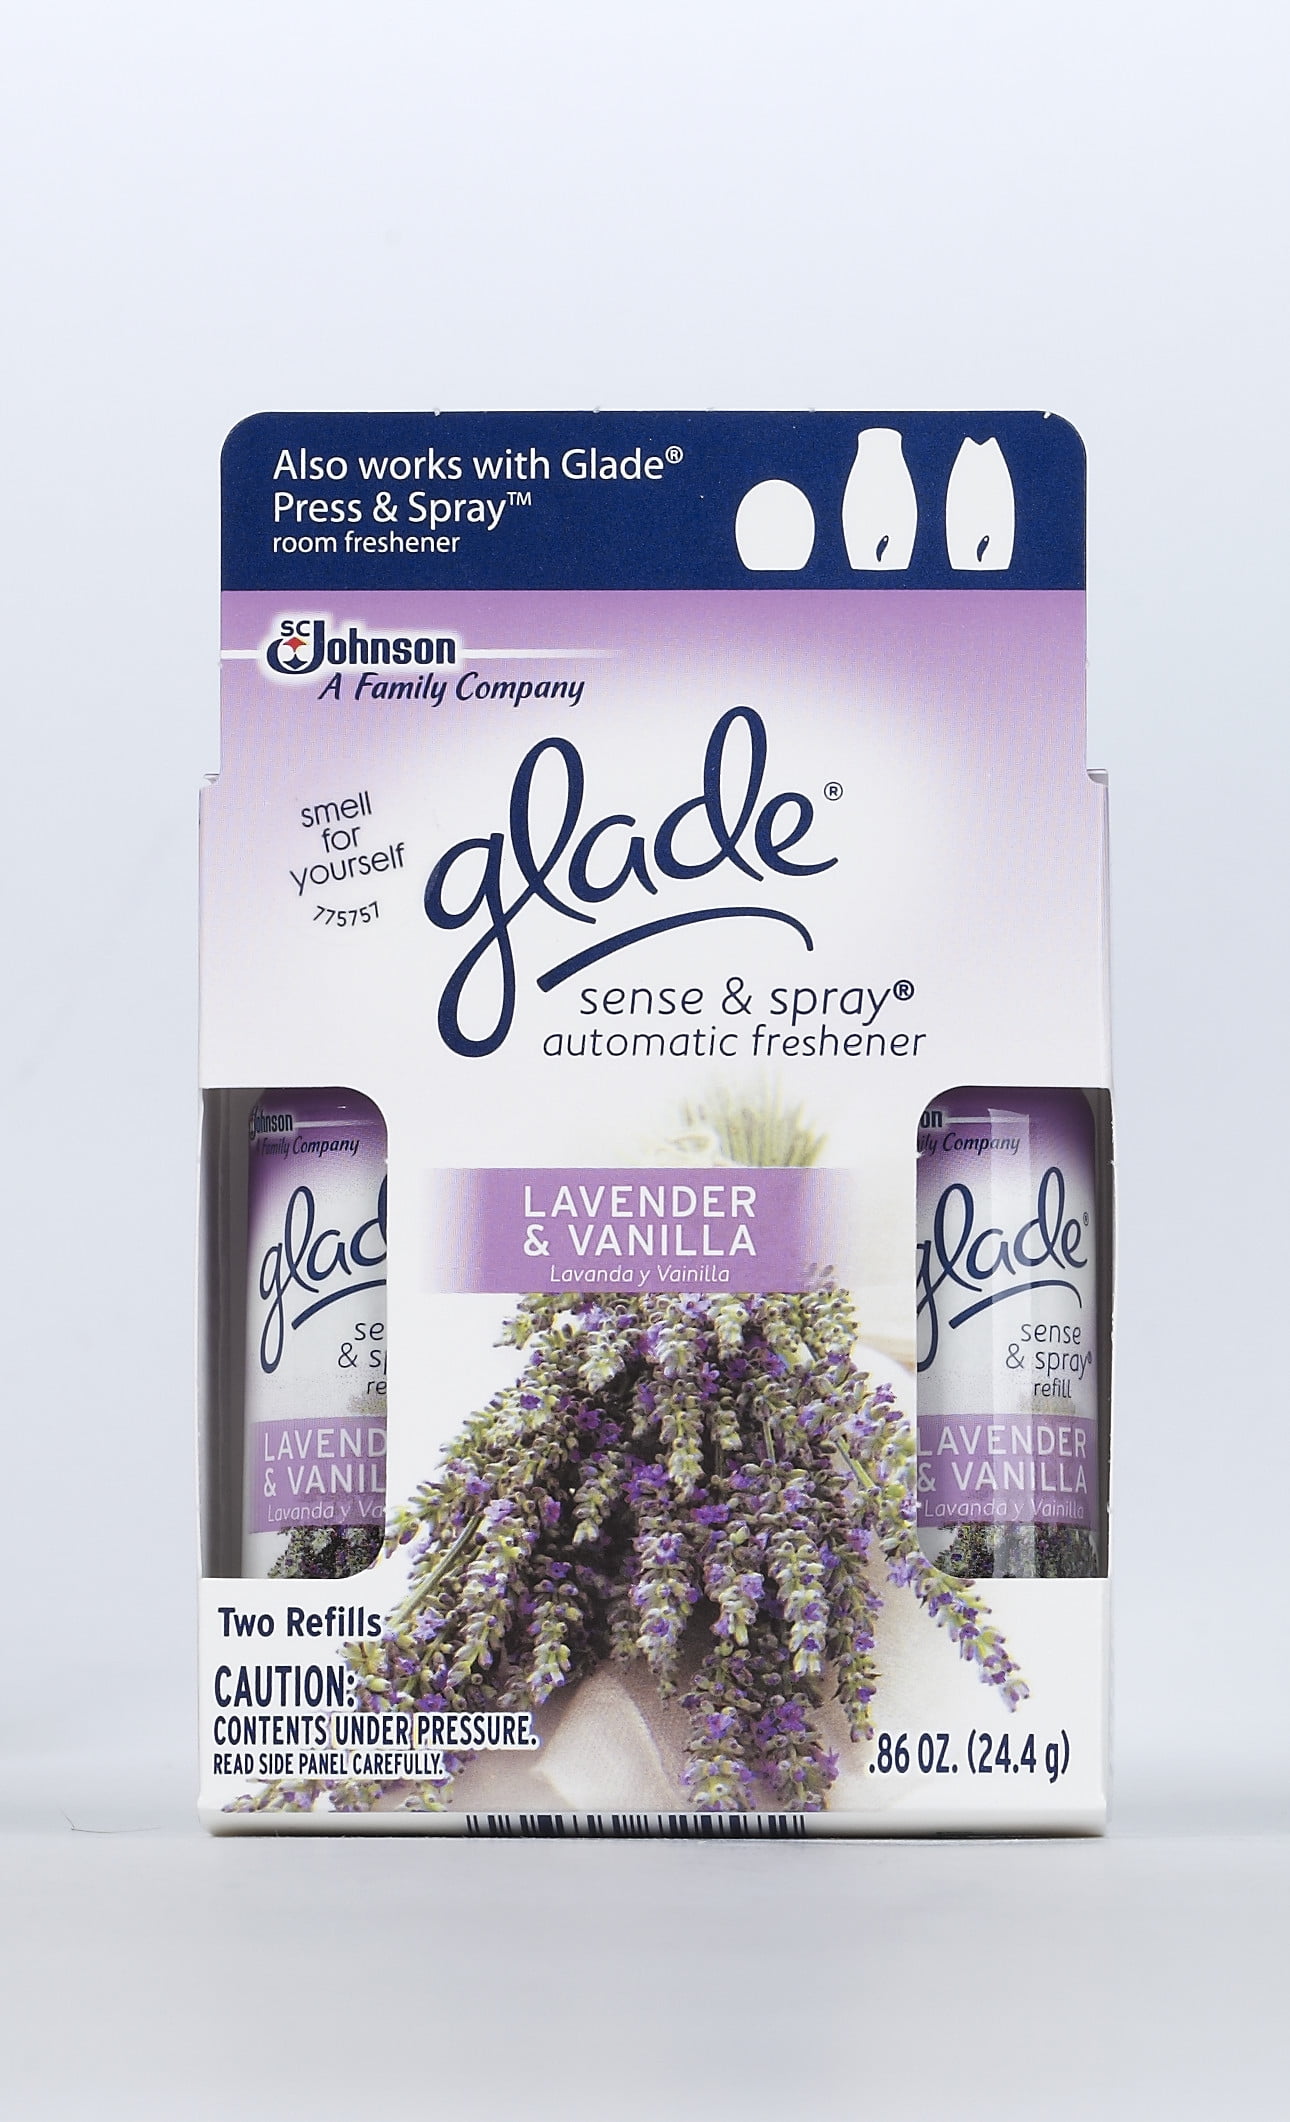 glade Duftspender sense & spray SENSUAL SANDALWOOD & JASMINE orientalisch  18 ml, 1 St.